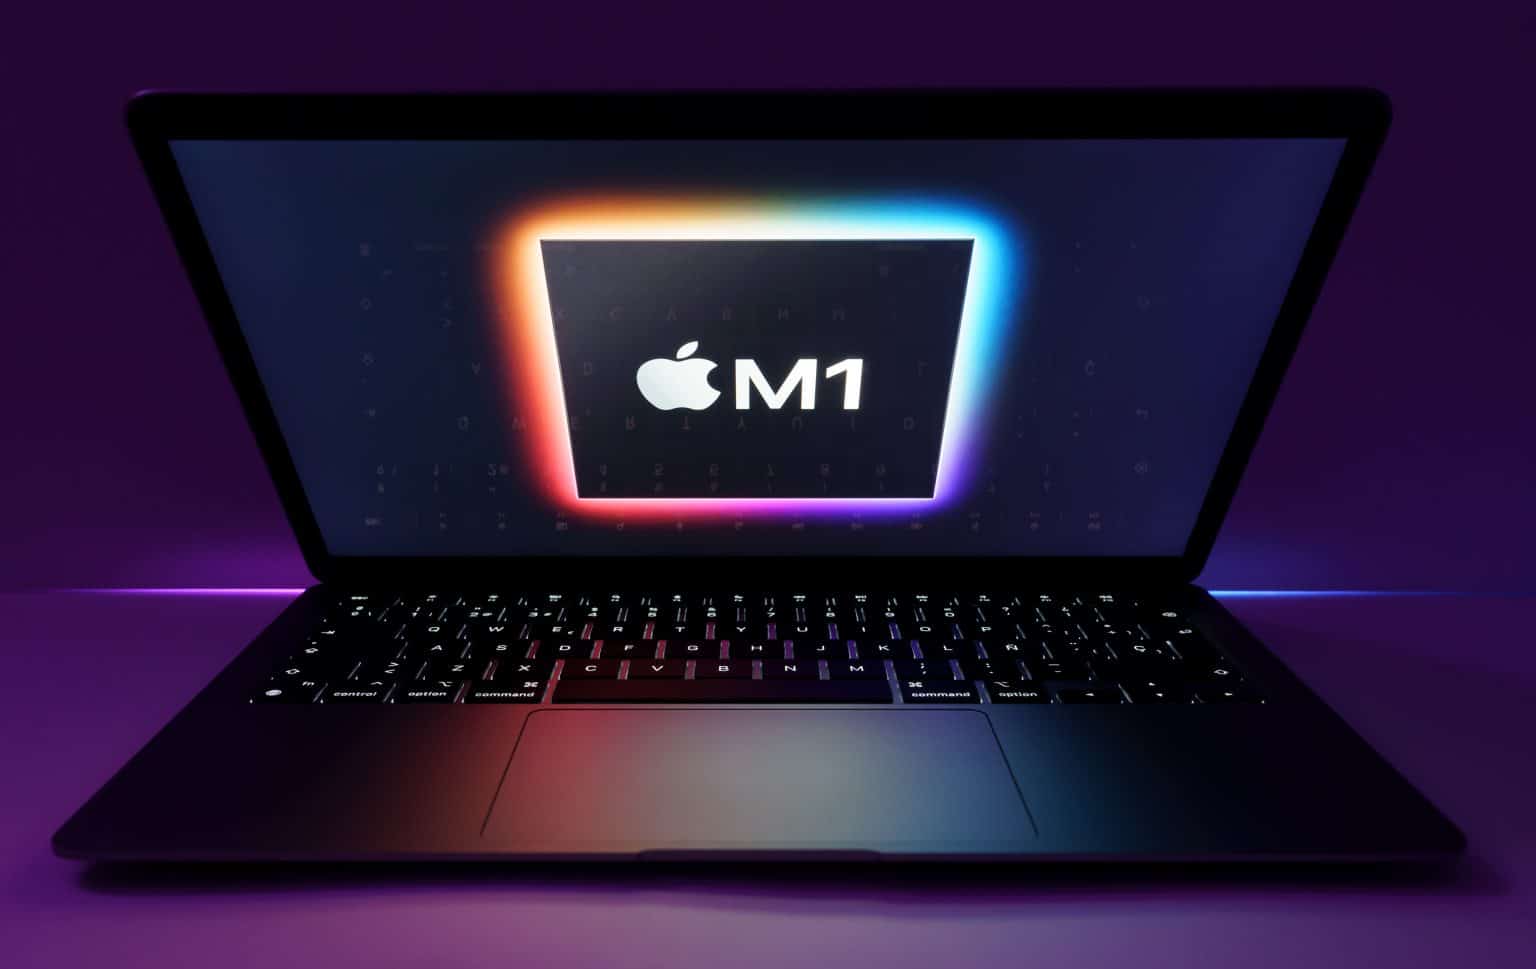 mac mini m1 ssd upgrade